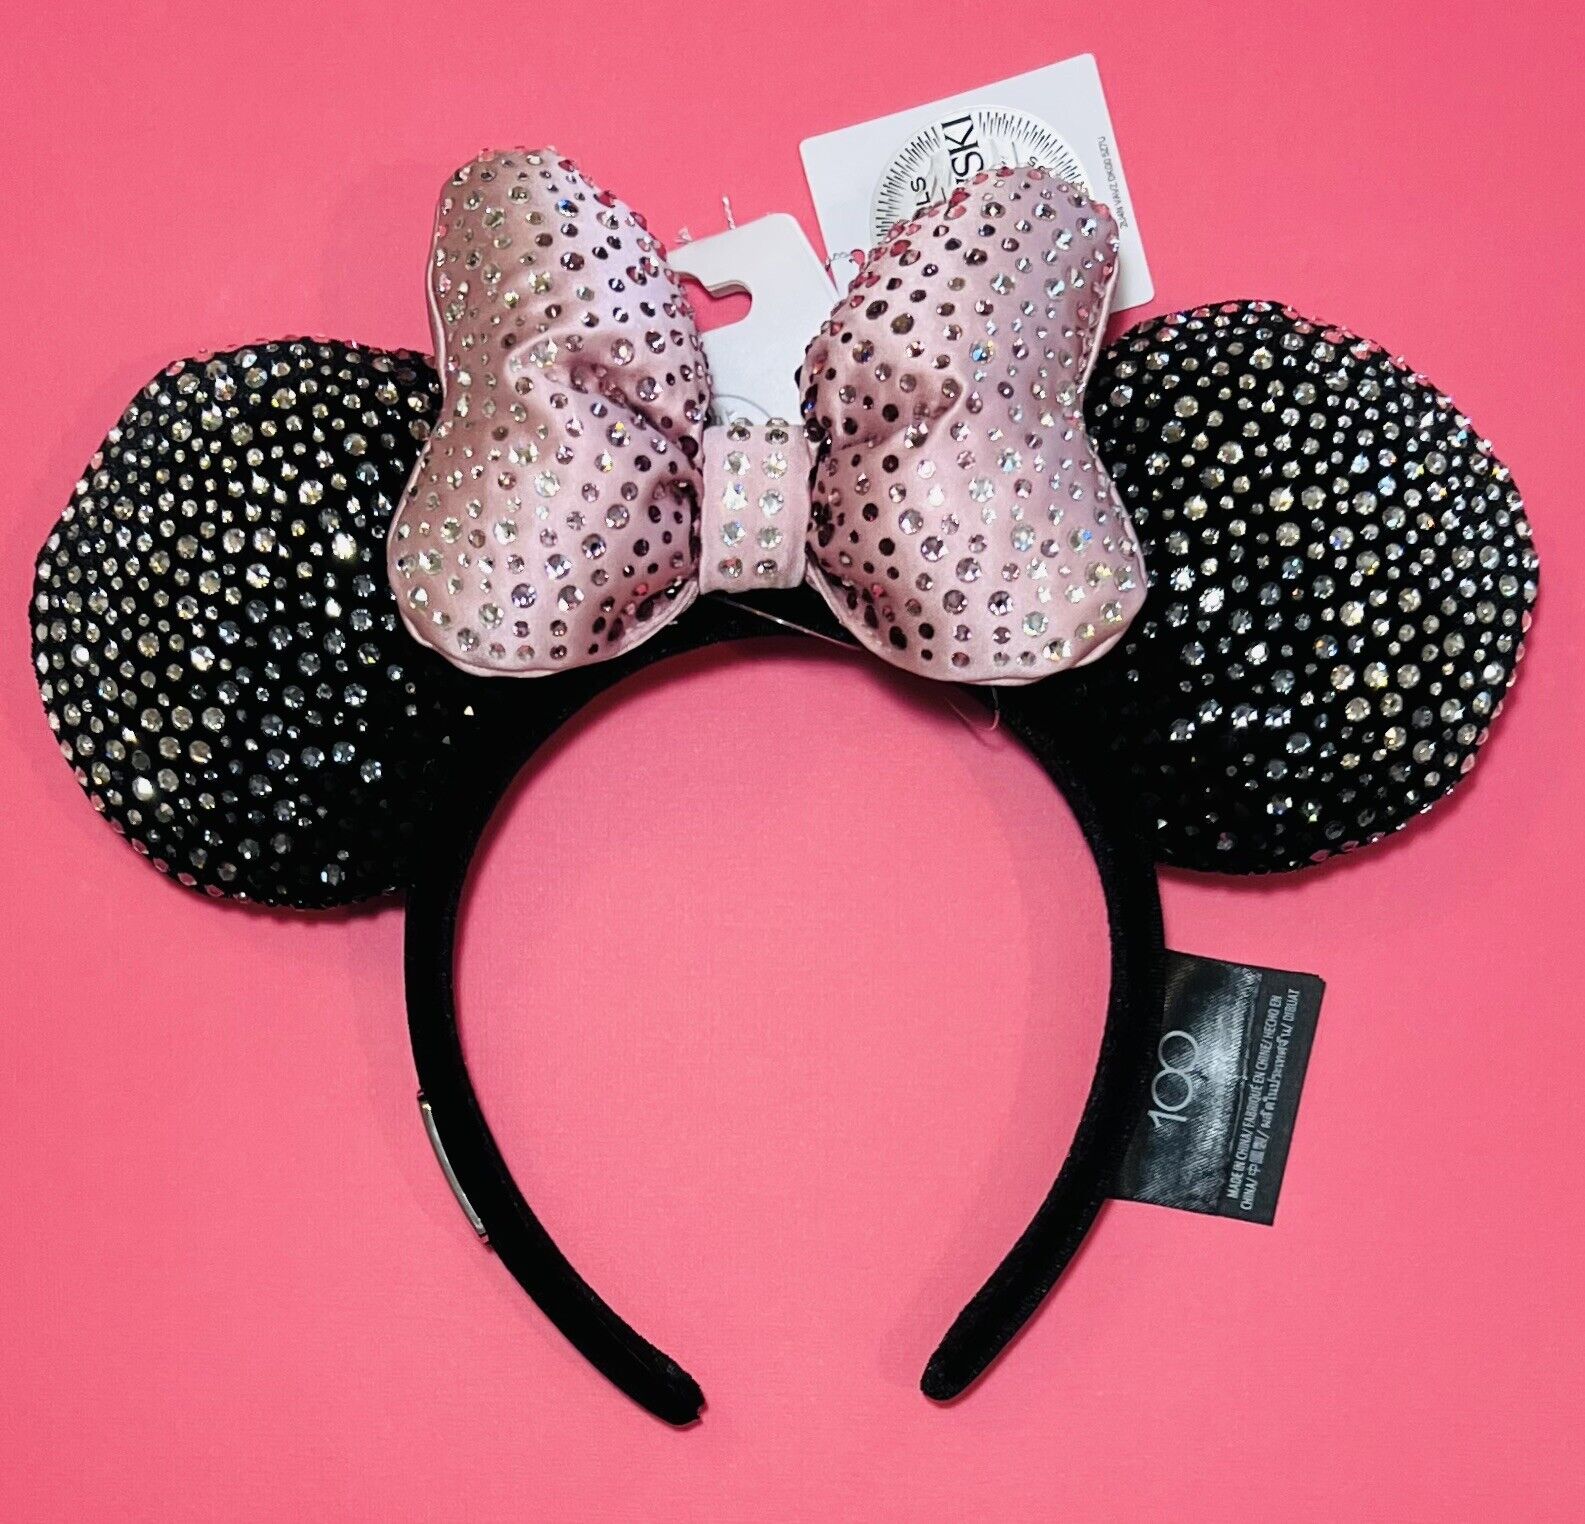 NWT NIB Disney 100 Minnie Mouse Swarovski Ear Headband